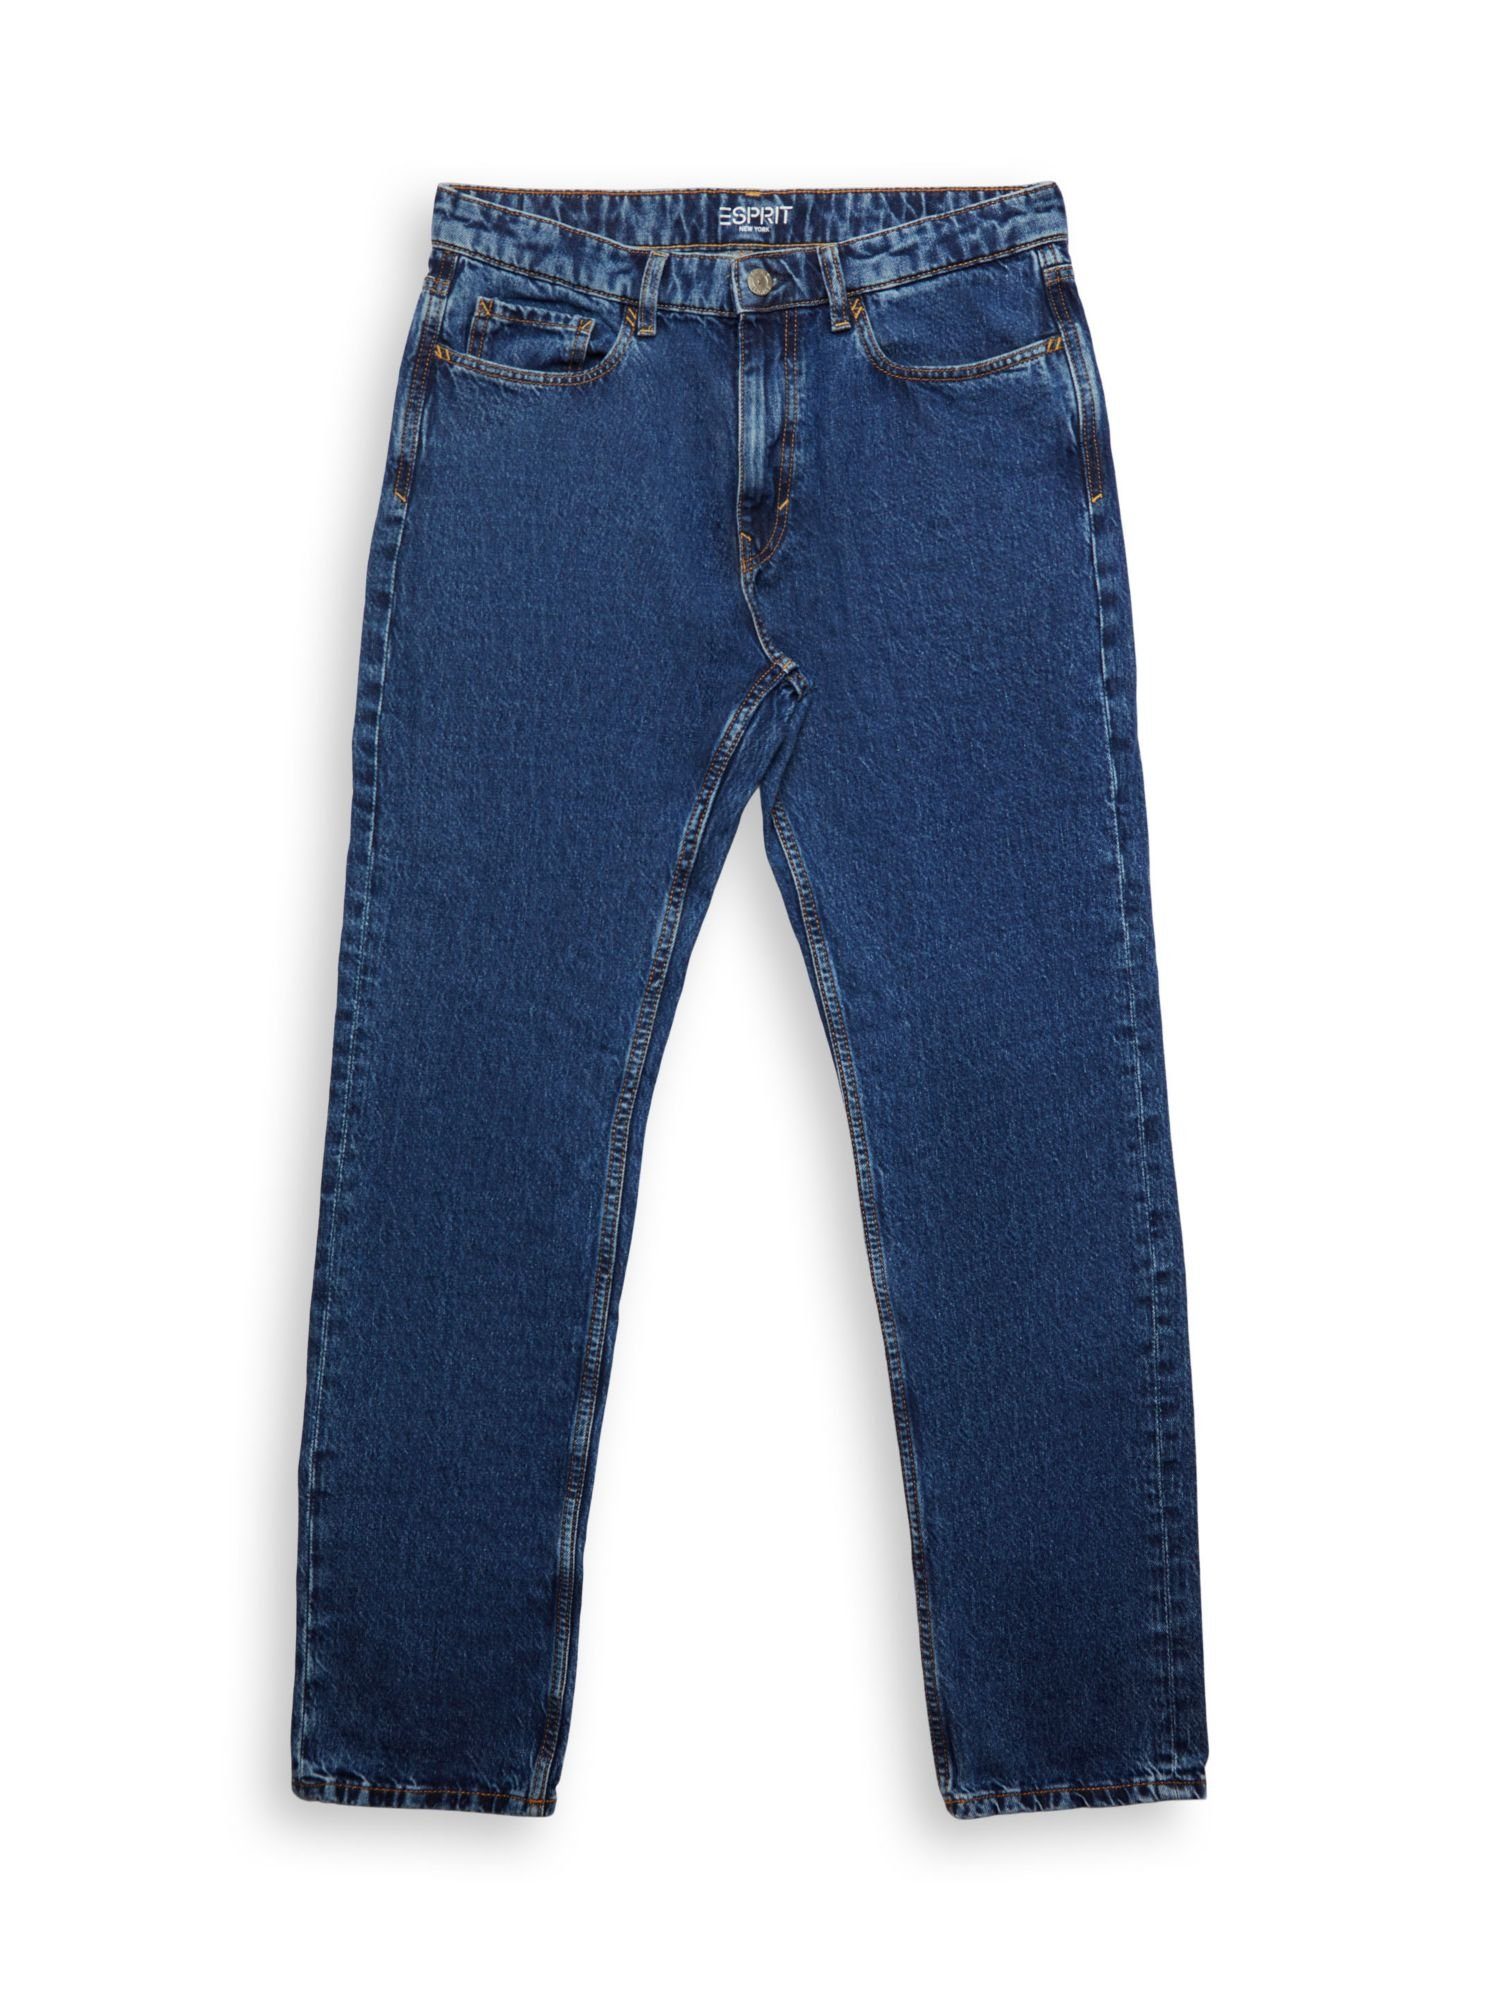 Esprit Straight-Jeans Jeans mit geradem Bein und mittlerer Bundhöhe